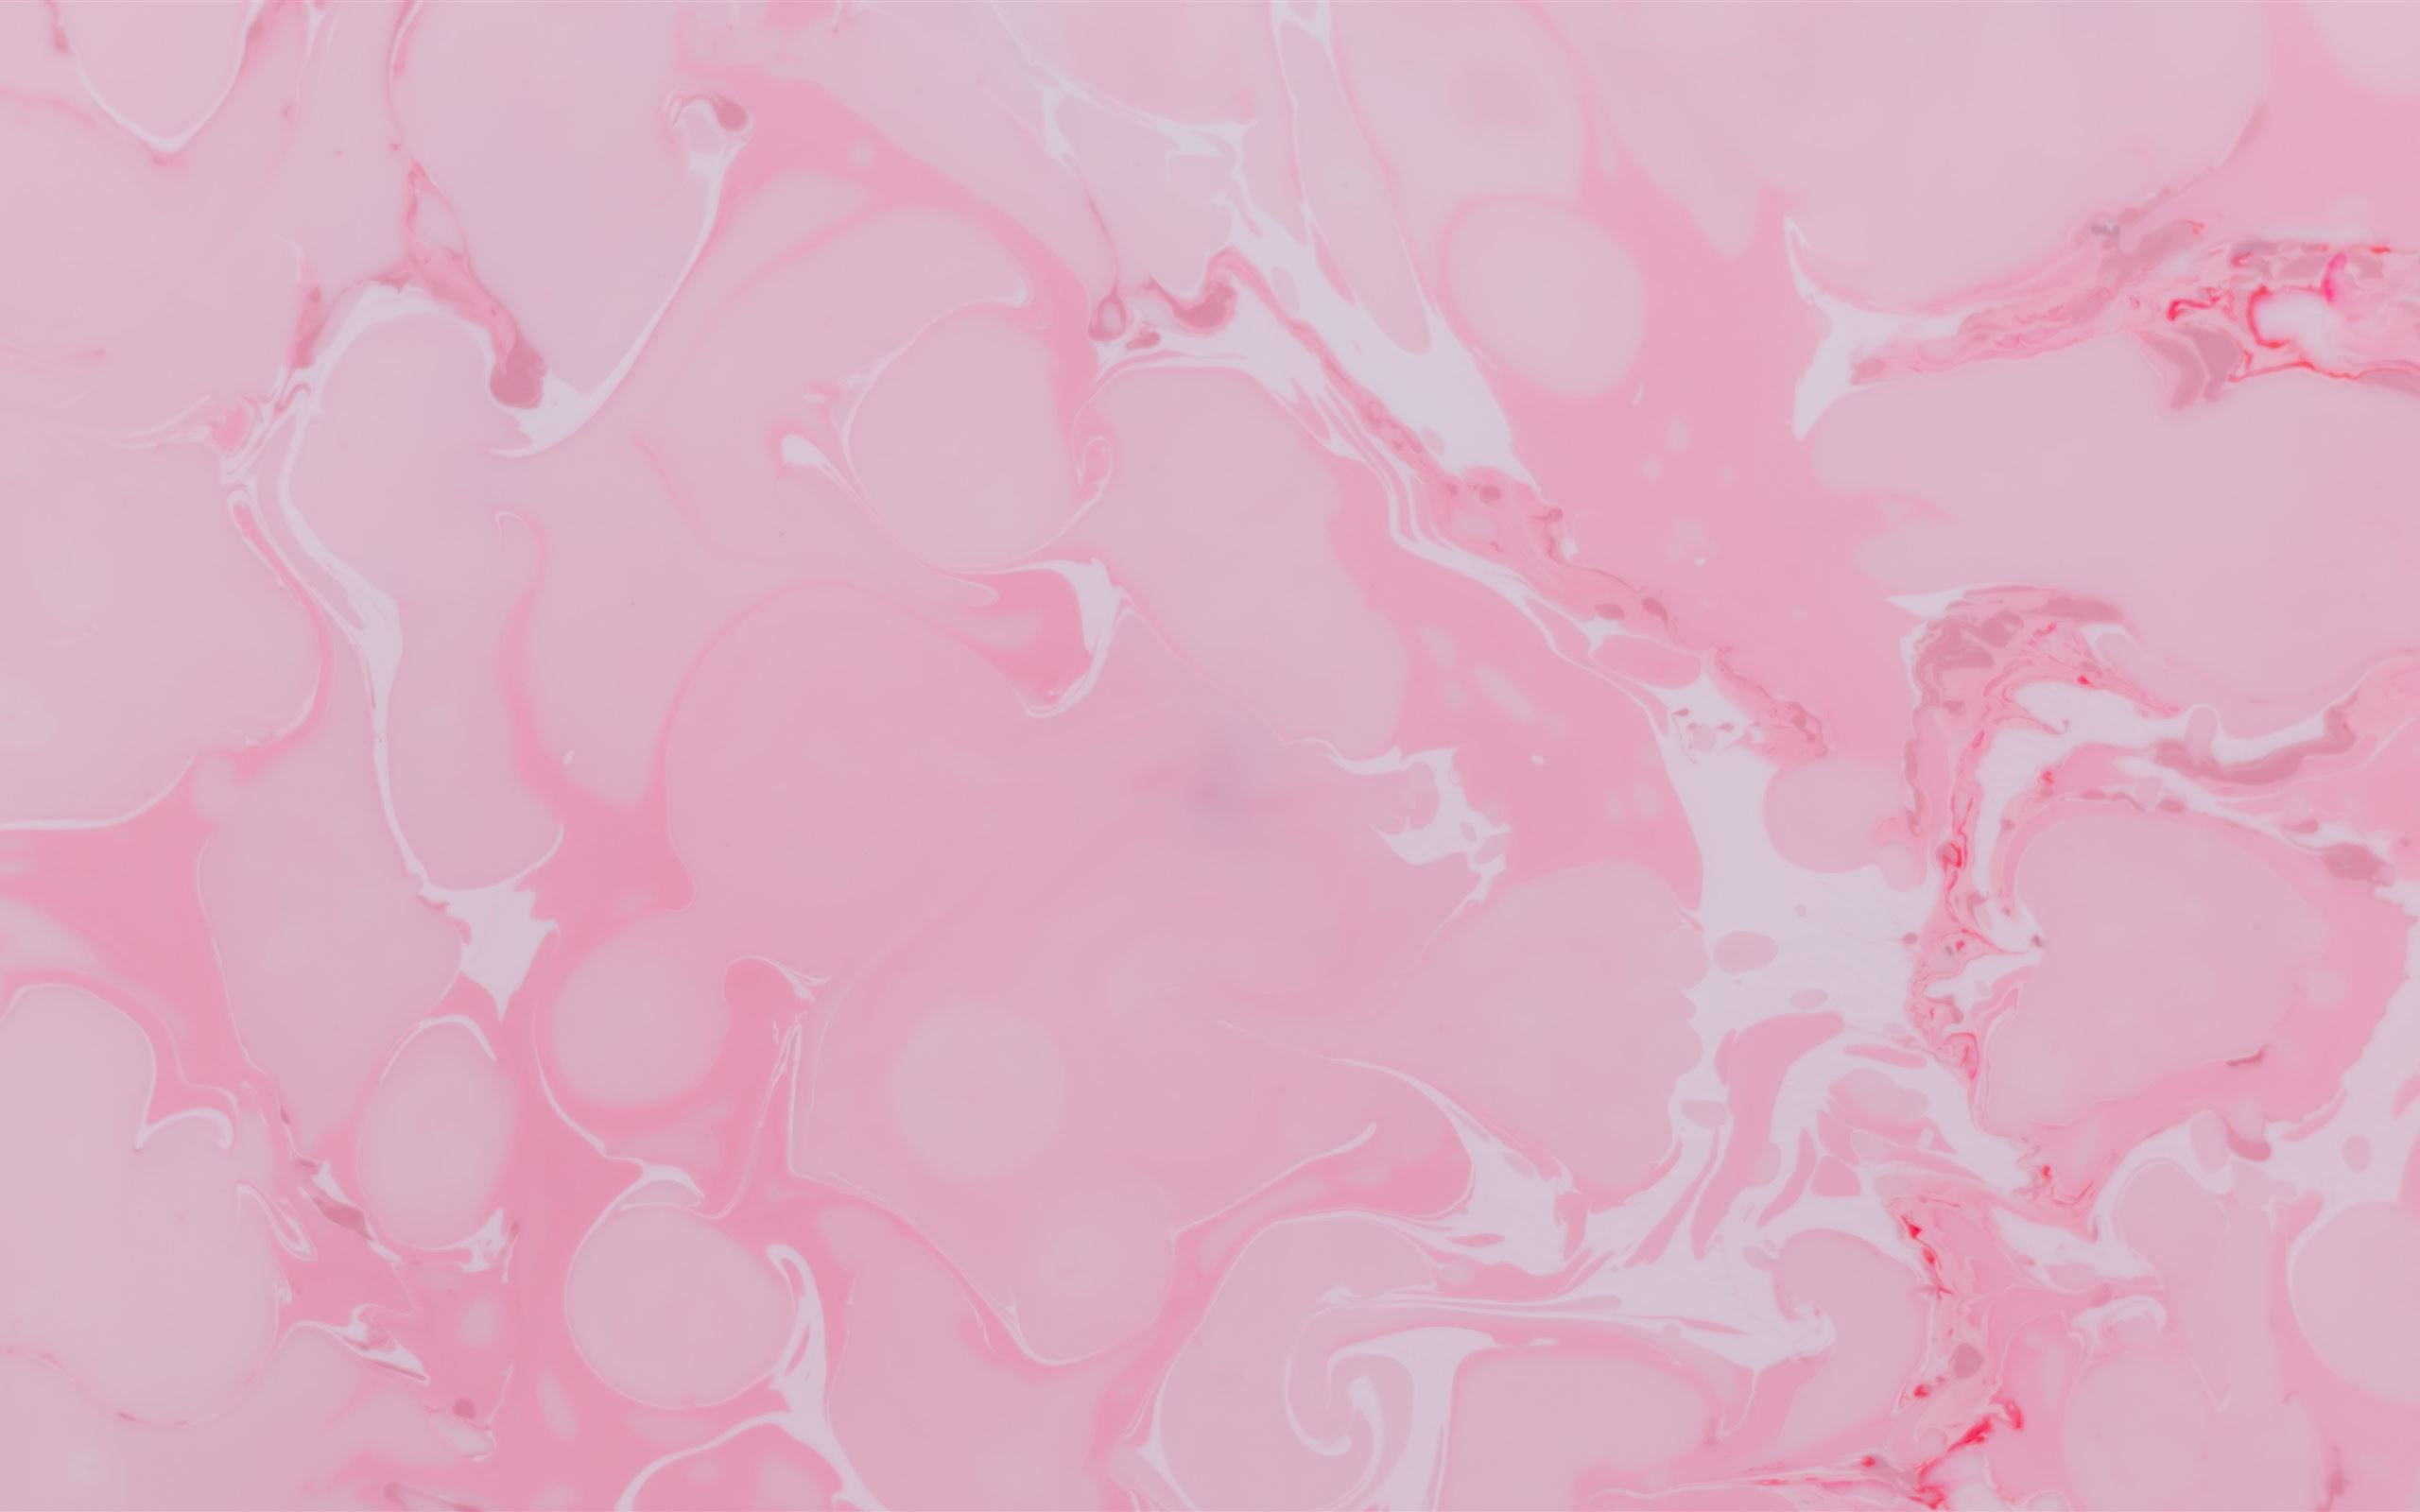 Pink Macbook Wallpapers: Với chủ đề màu hồng ngọt ngào, những hình nền Macbook sẽ khiến bạn phải say mê ngay từ cái nhìn đầu tiên. Hãy cùng xem những tác phẩm nghệ thuật số tuyệt đẹp liên quan đến chủ đề này để tạo một không gian làm việc thật đẹp mắt cho mình.